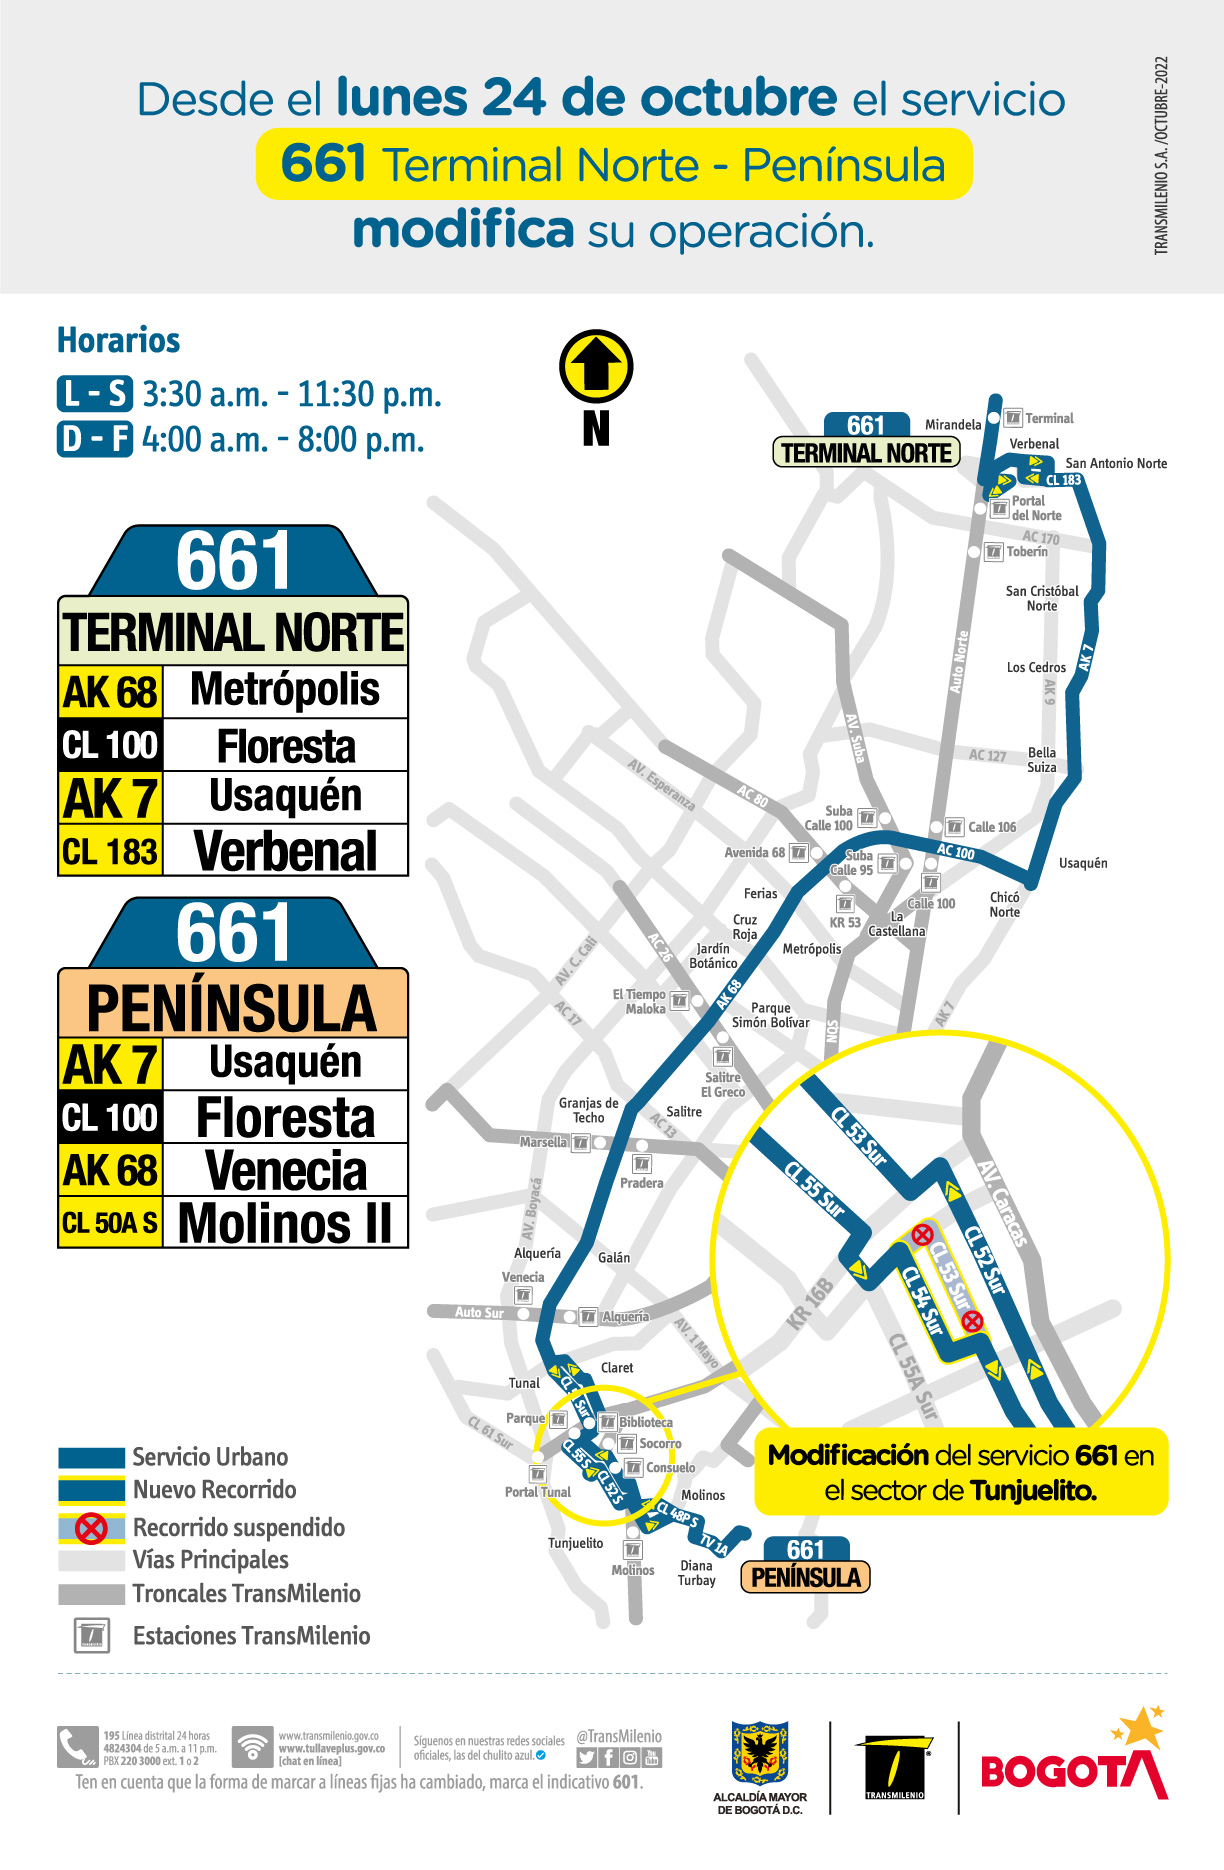 TransMilenio: Cambios operacionales y otras novedades en rutas zonales